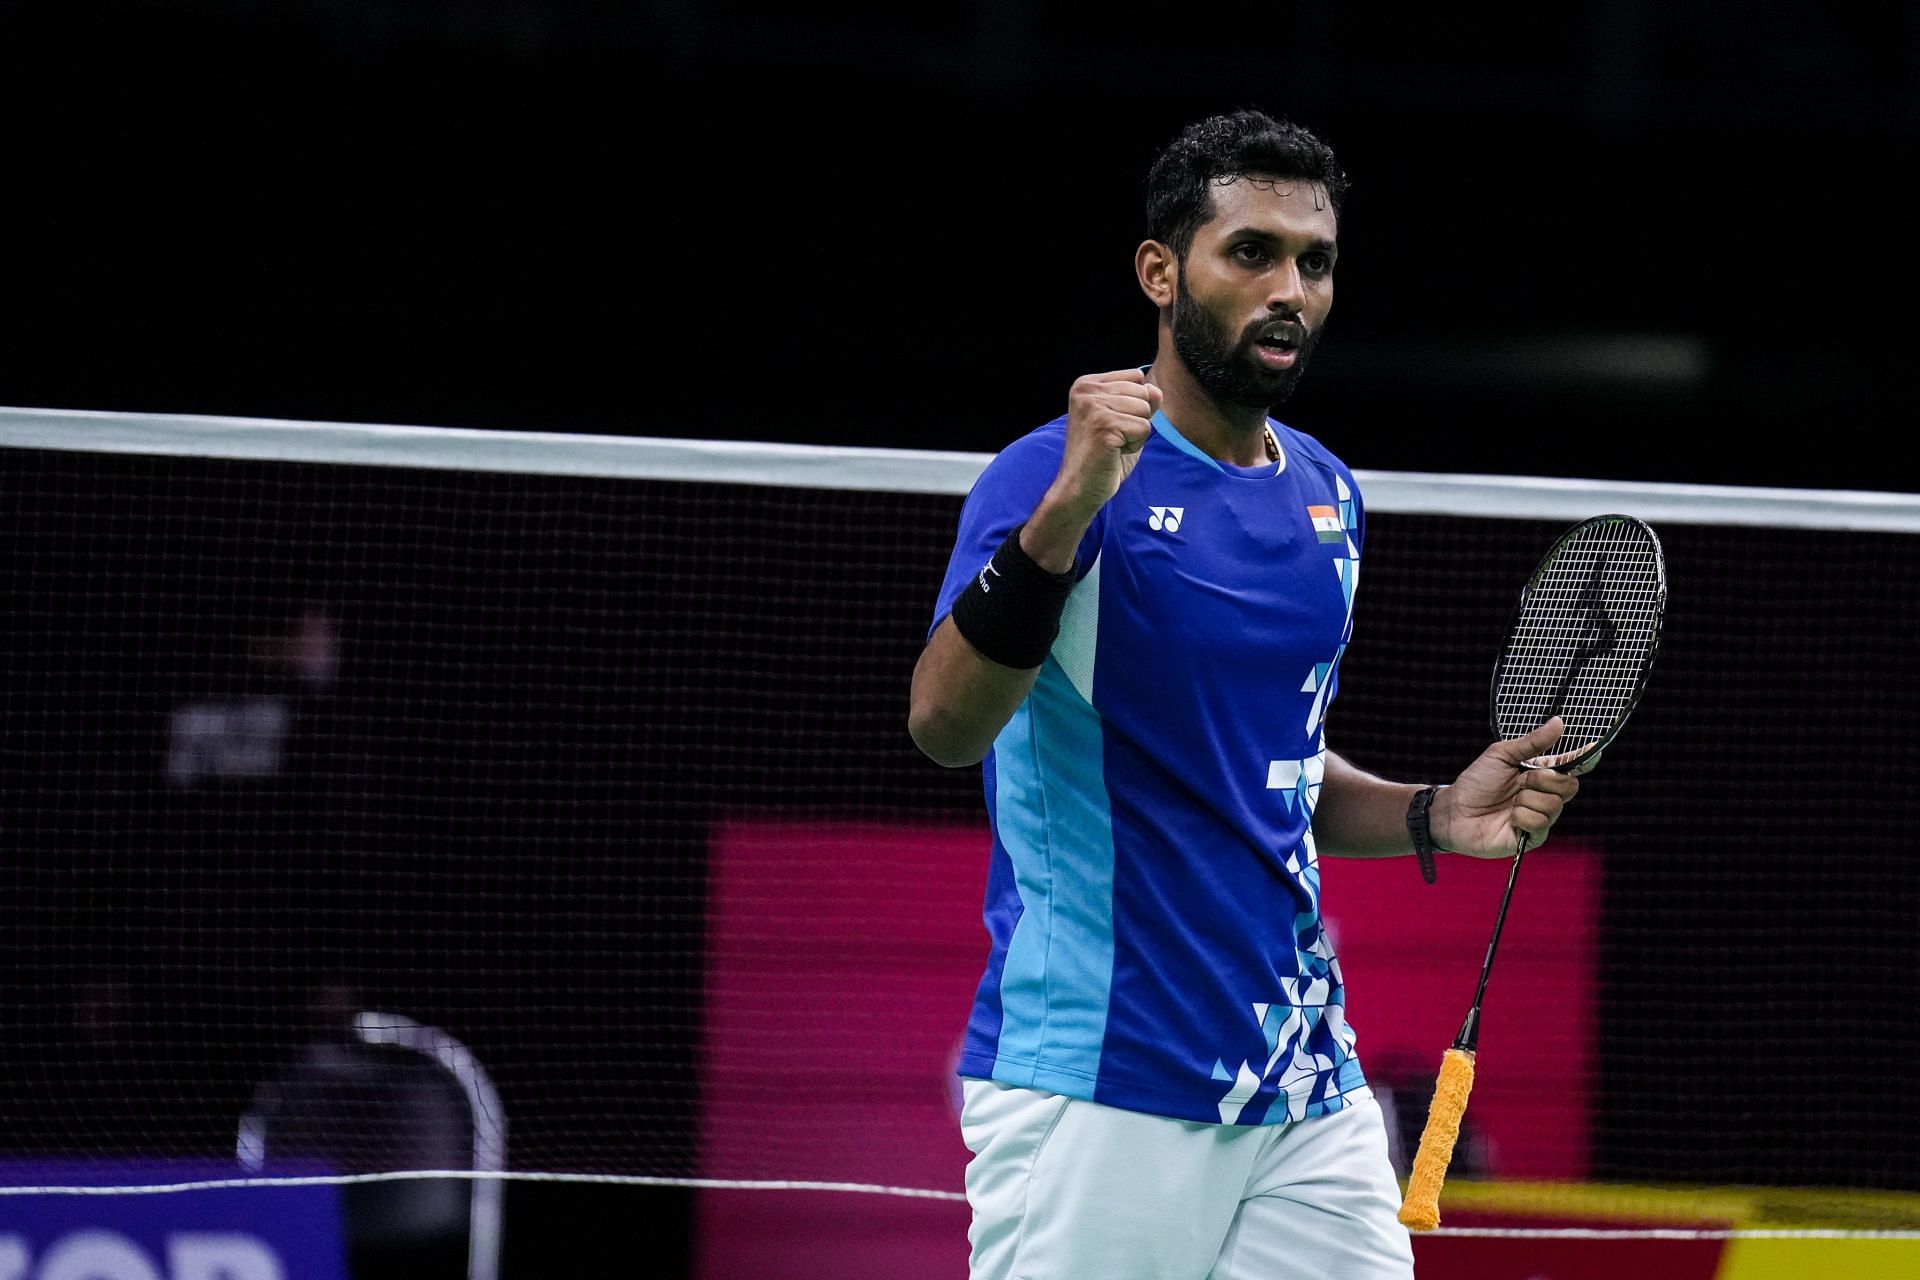 एच एस प्रणॉय ने पैर में चोट के बावजूद निर्णायक मैच में जीत दर्ज की।